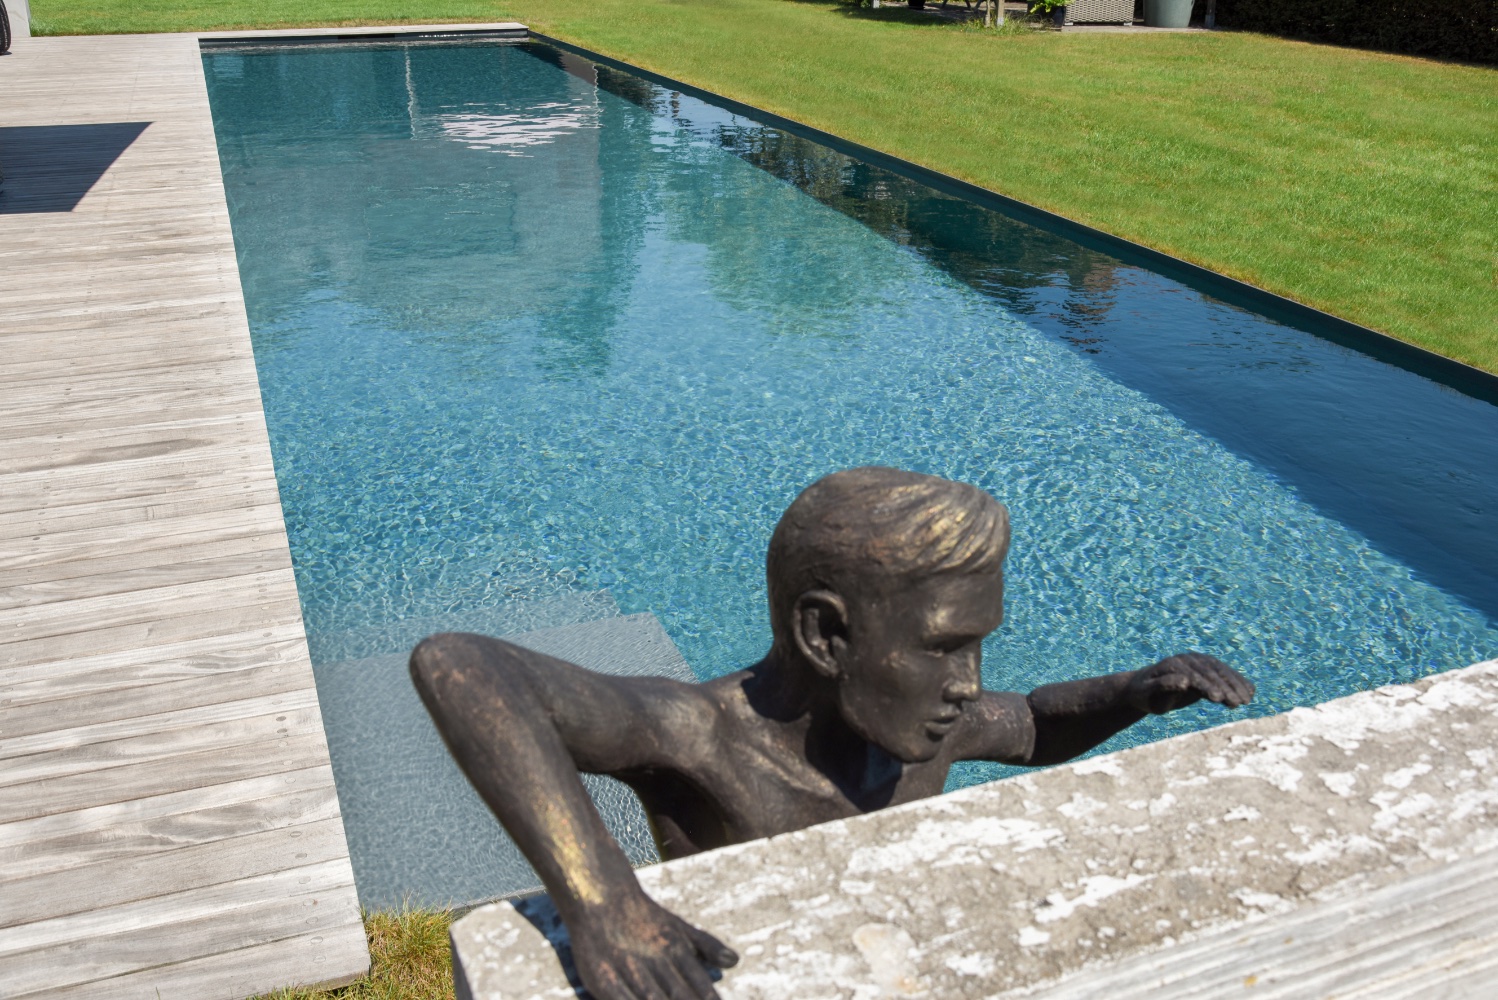 naast het zwembad staat een kunstwerk beeld van man lijkt uit het zwembad te kruipen